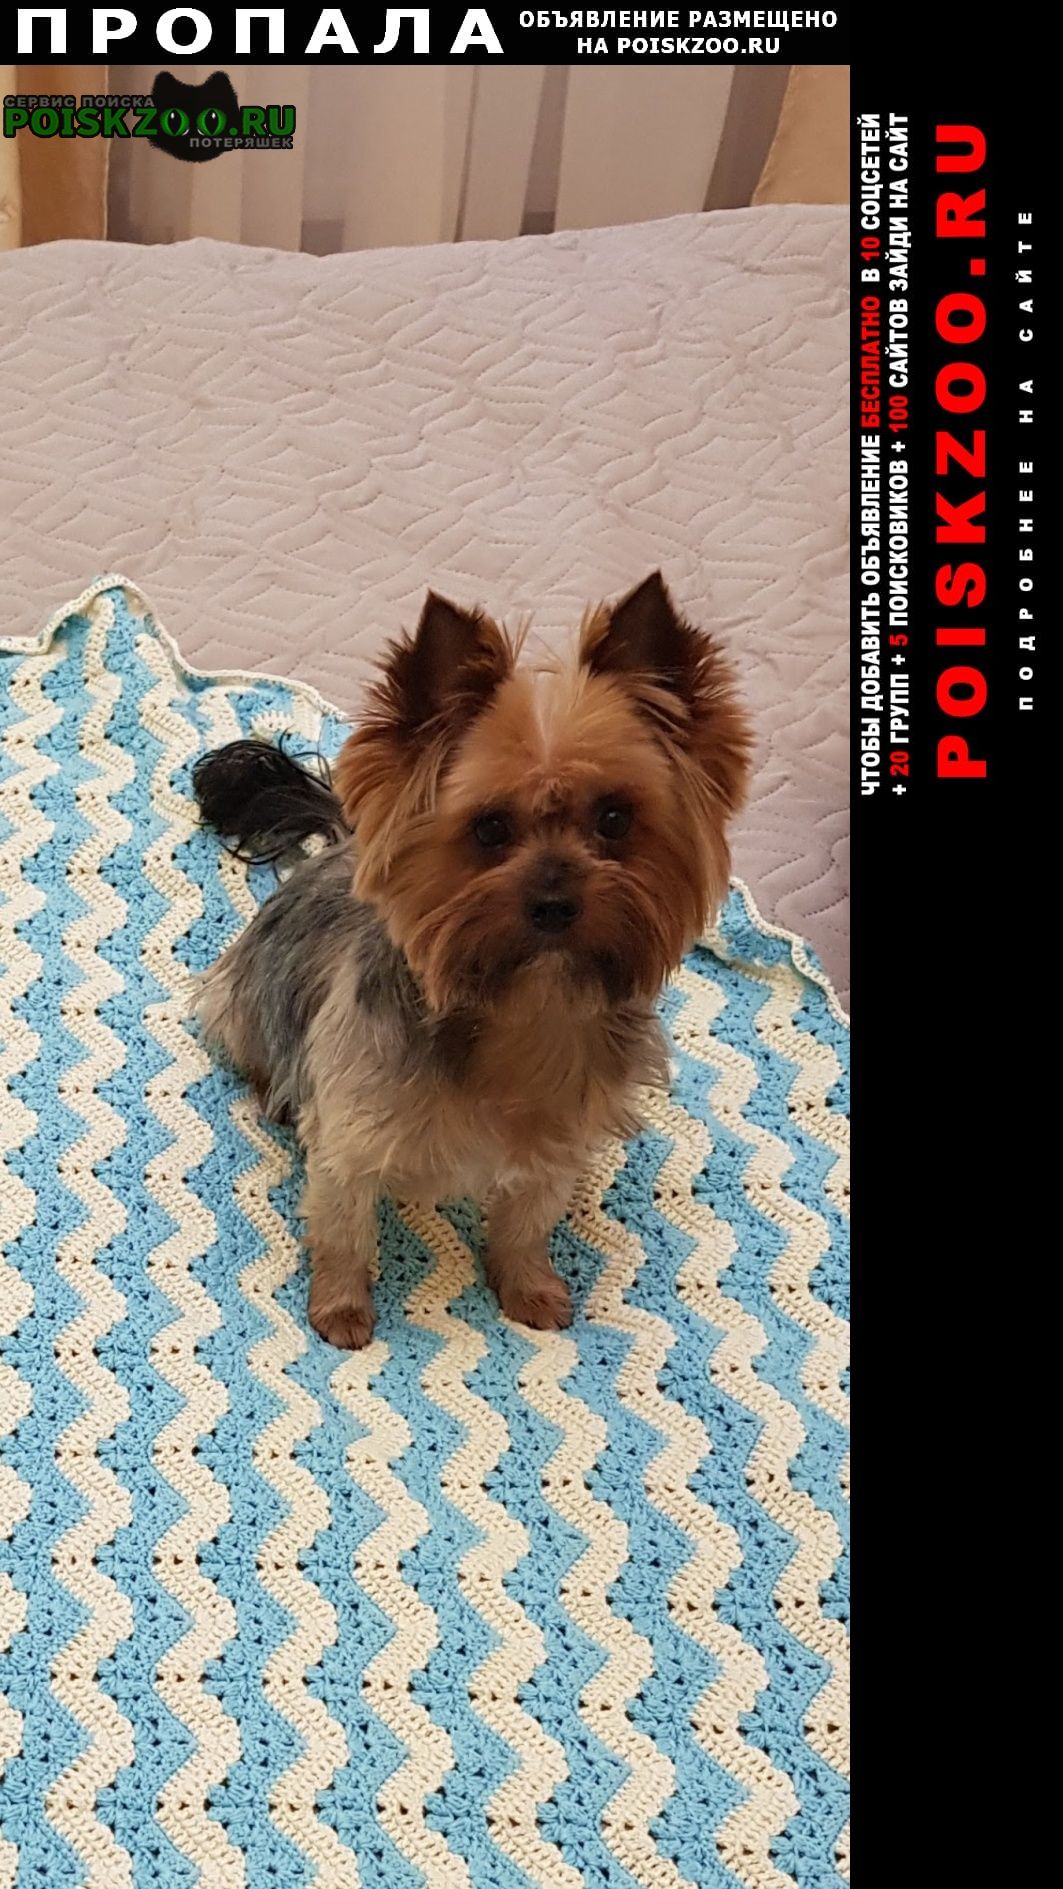 Пропала собака кобель йоркширский терьер, 2014г. р в г. Пушкино